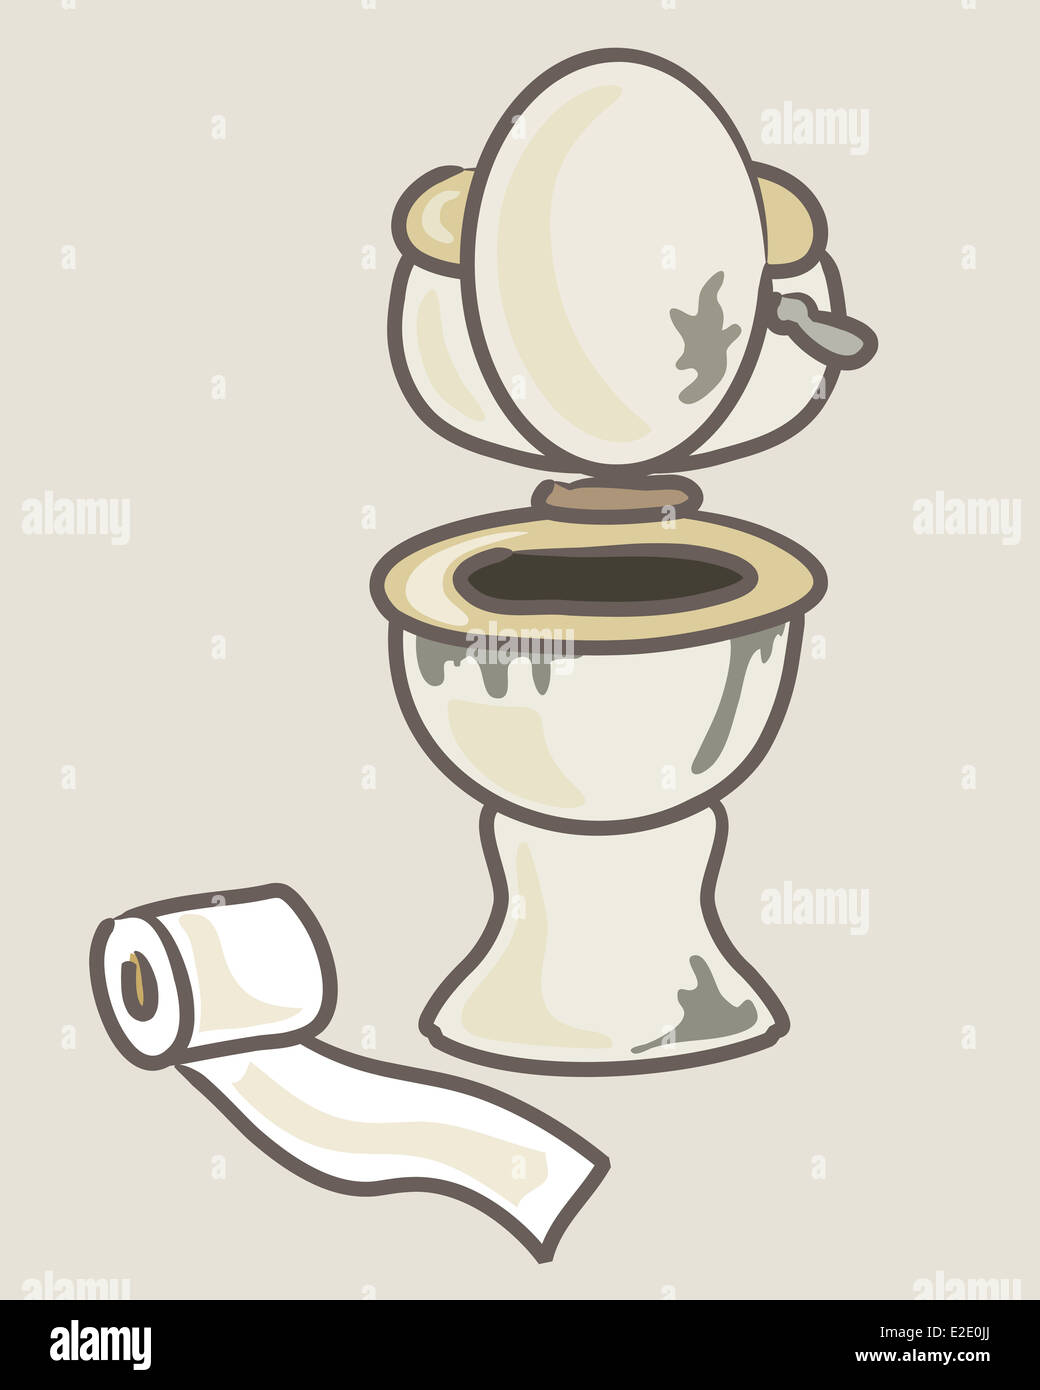 Une illustration d'un style cartoon et toilettes toilettes insalubres sales roll sur un fond beige Banque D'Images